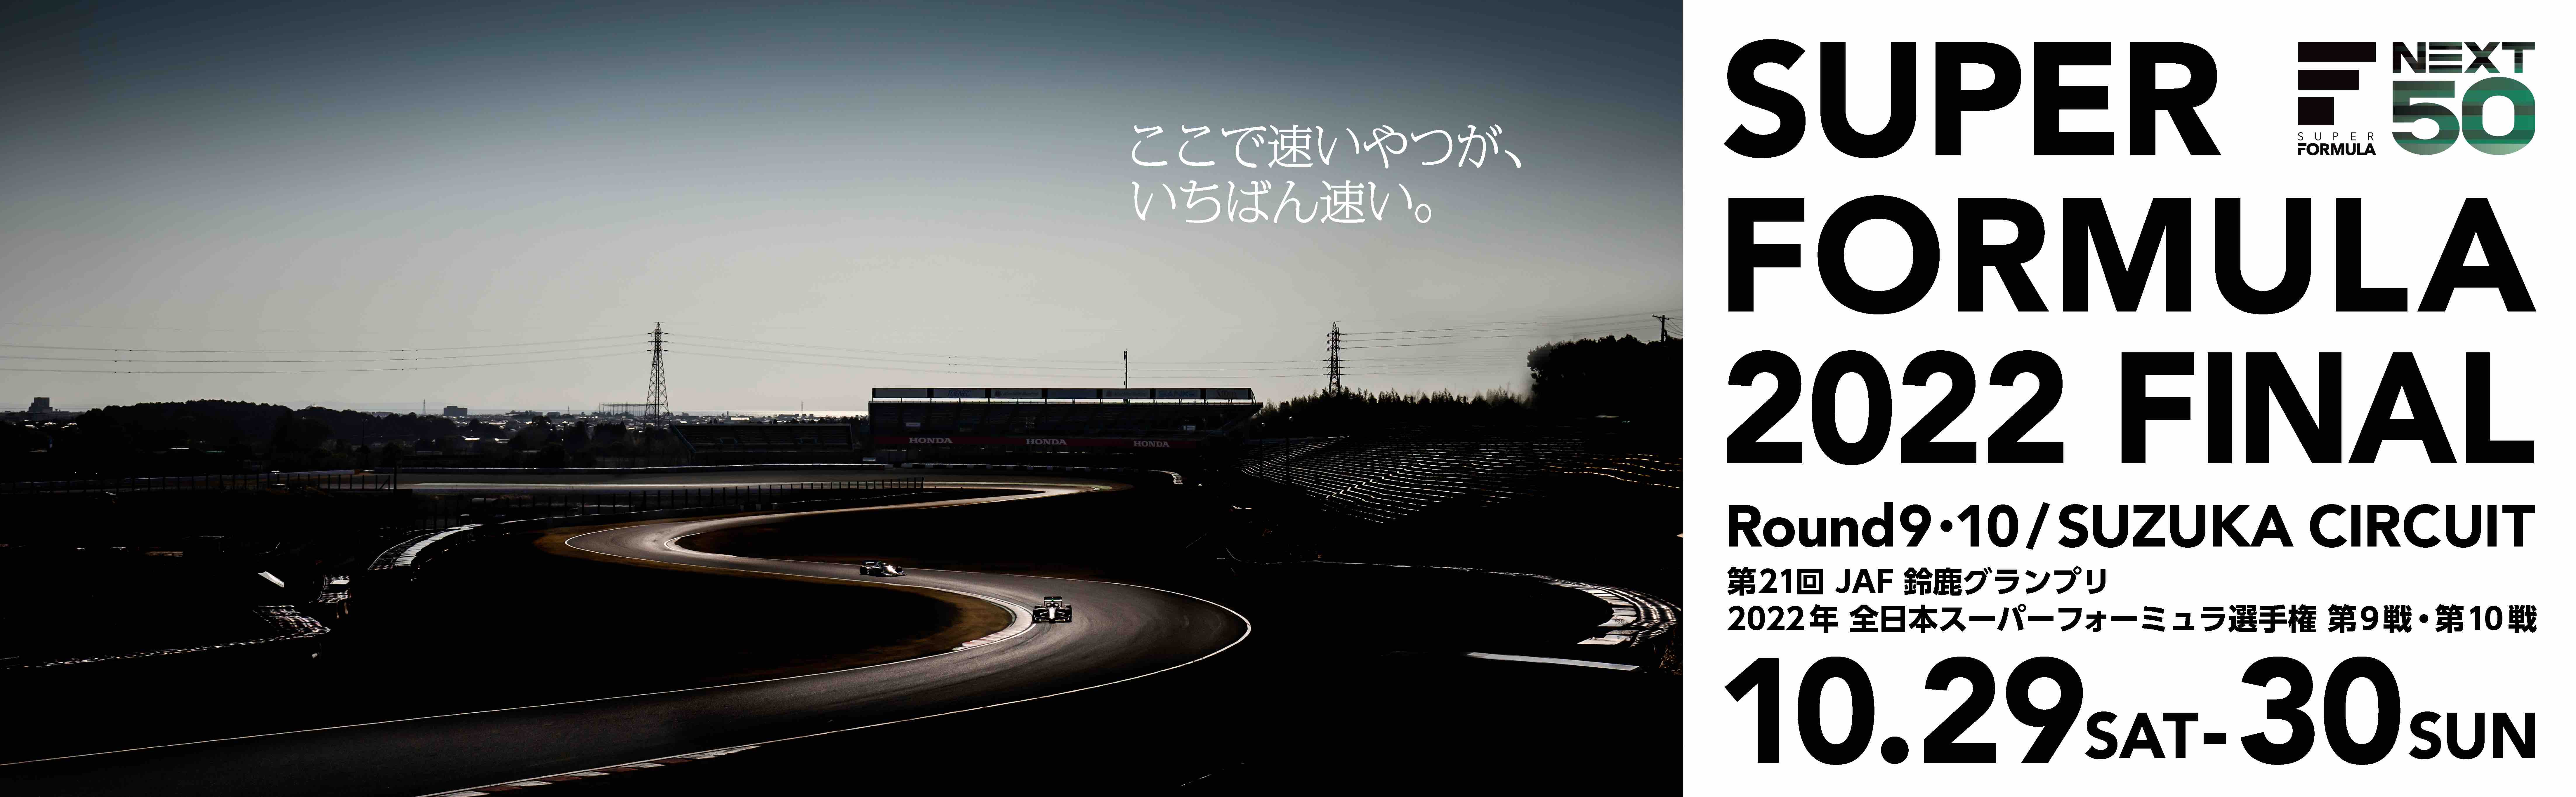 Round 9/10 Suzuka Circuit